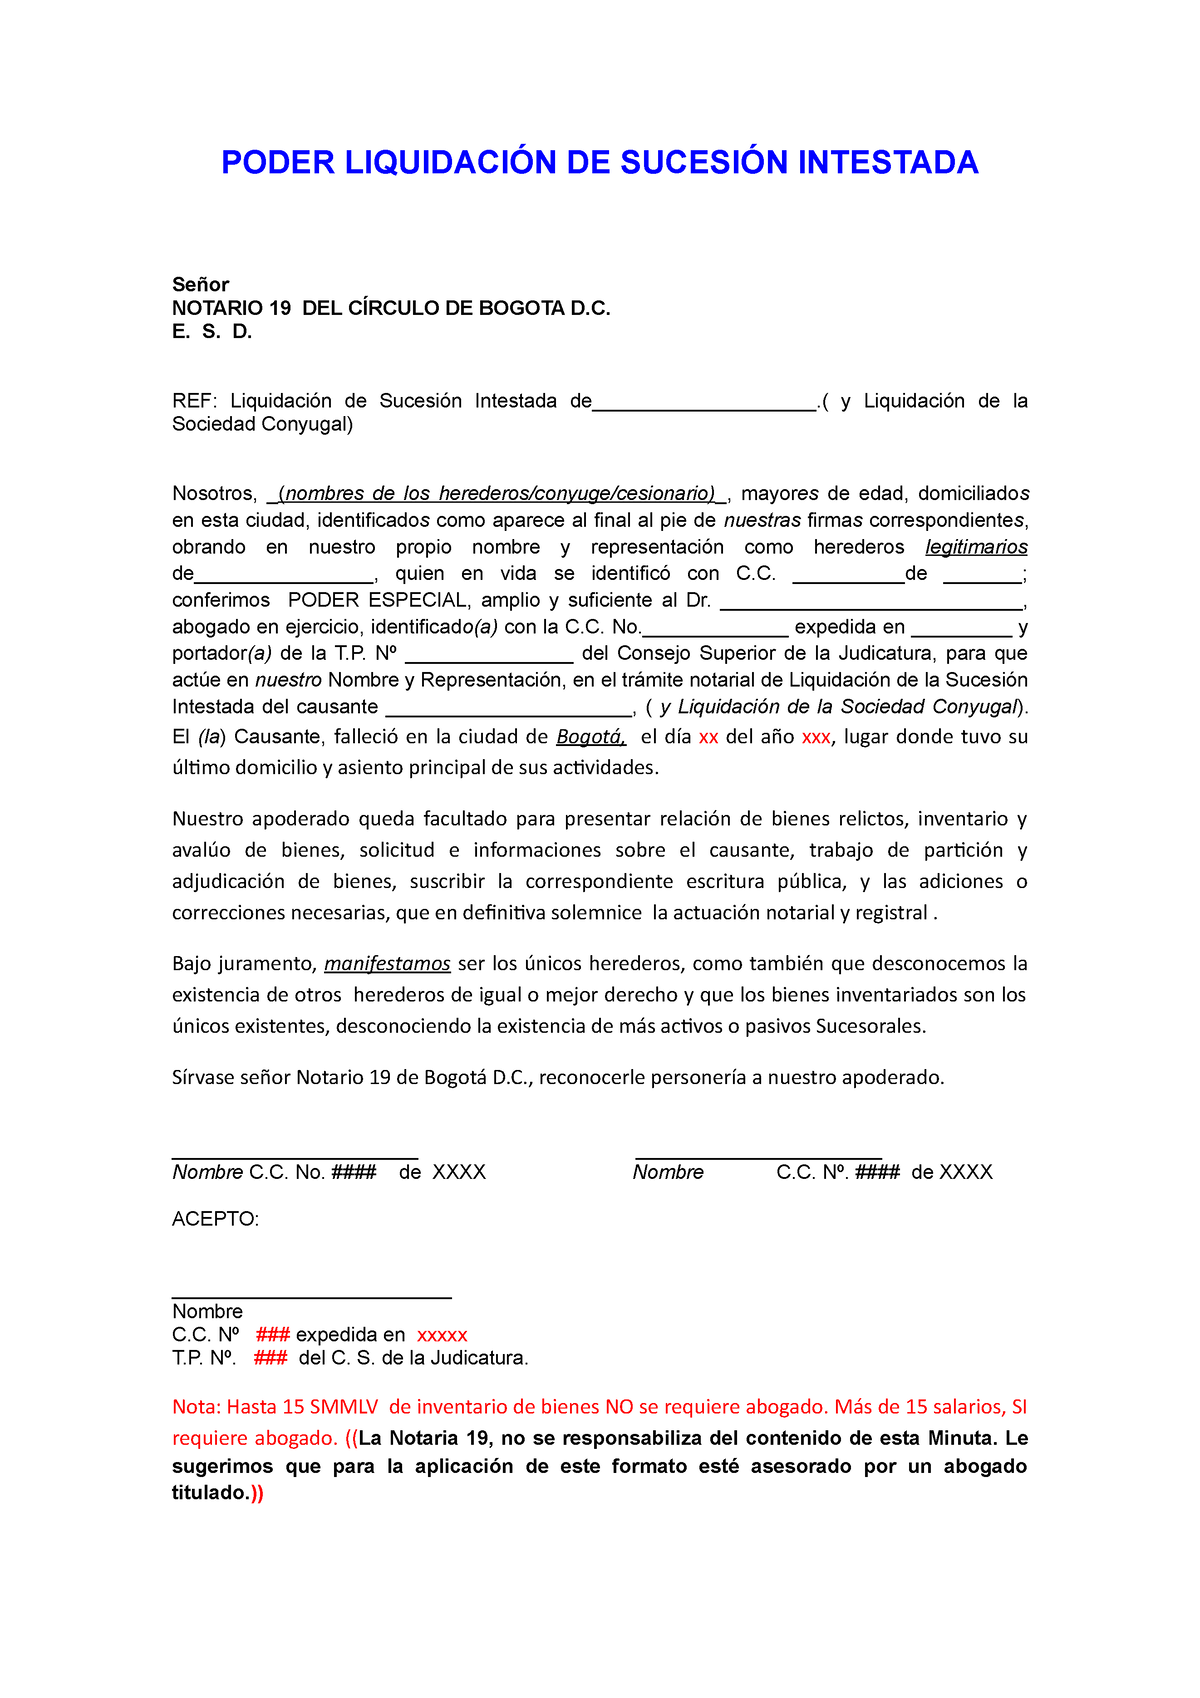 Poder sucesion intestada ante notario - PODER LIQUIDACIÓN DE SUCESIÓN  INTESTADA Señor NOTARIO 19 DEL - Studocu